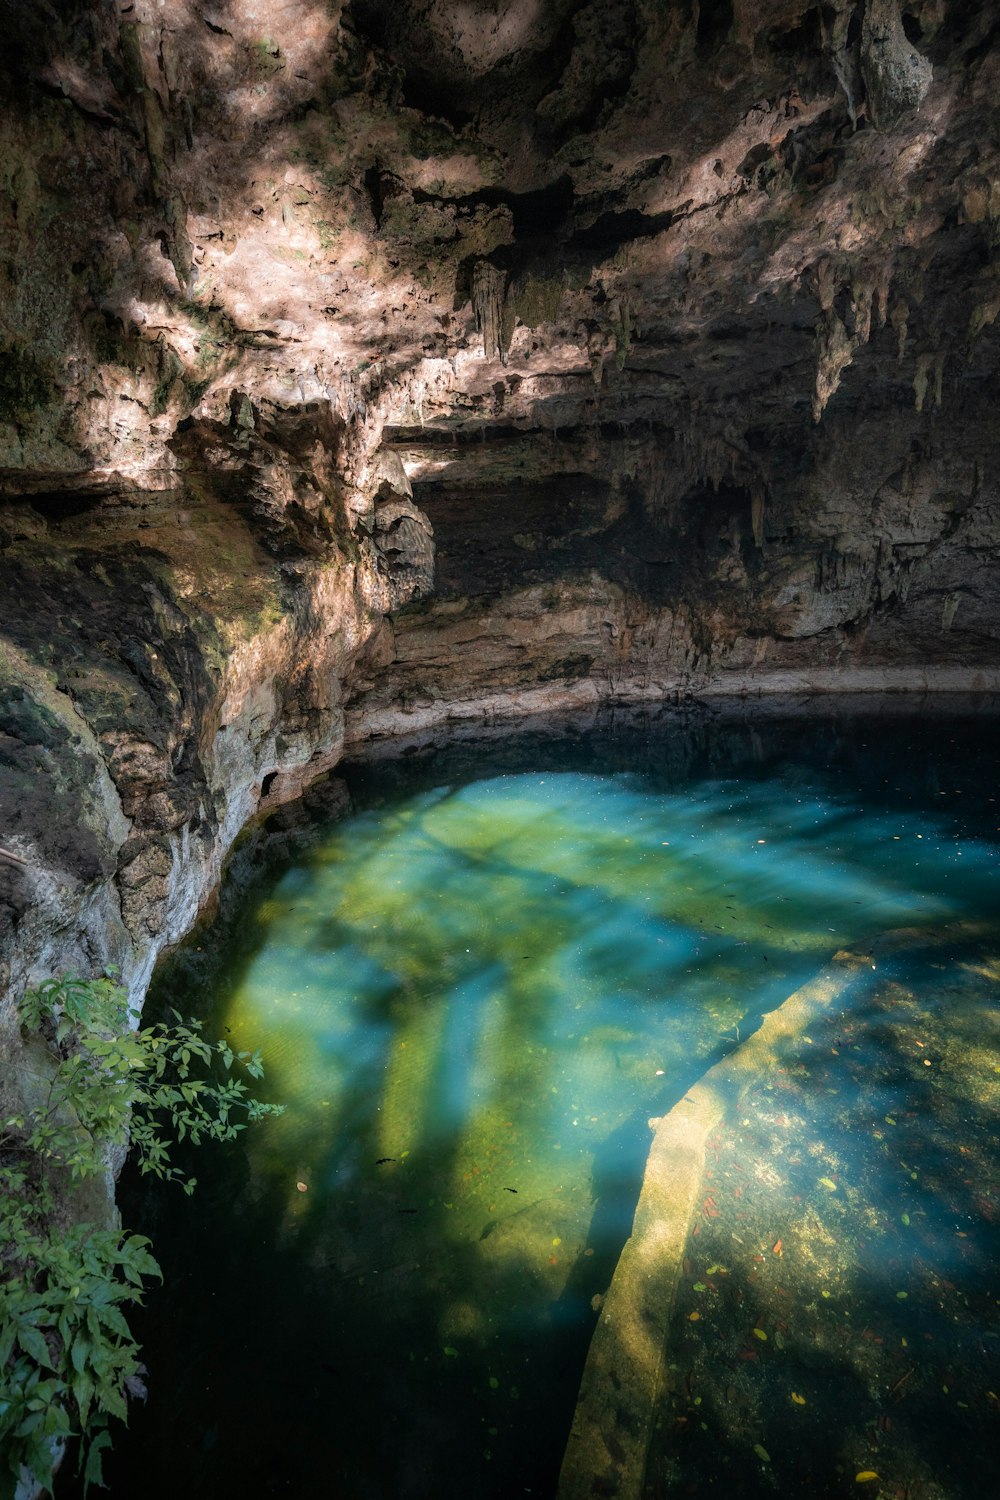 una grande pozza d'acqua in una grotta